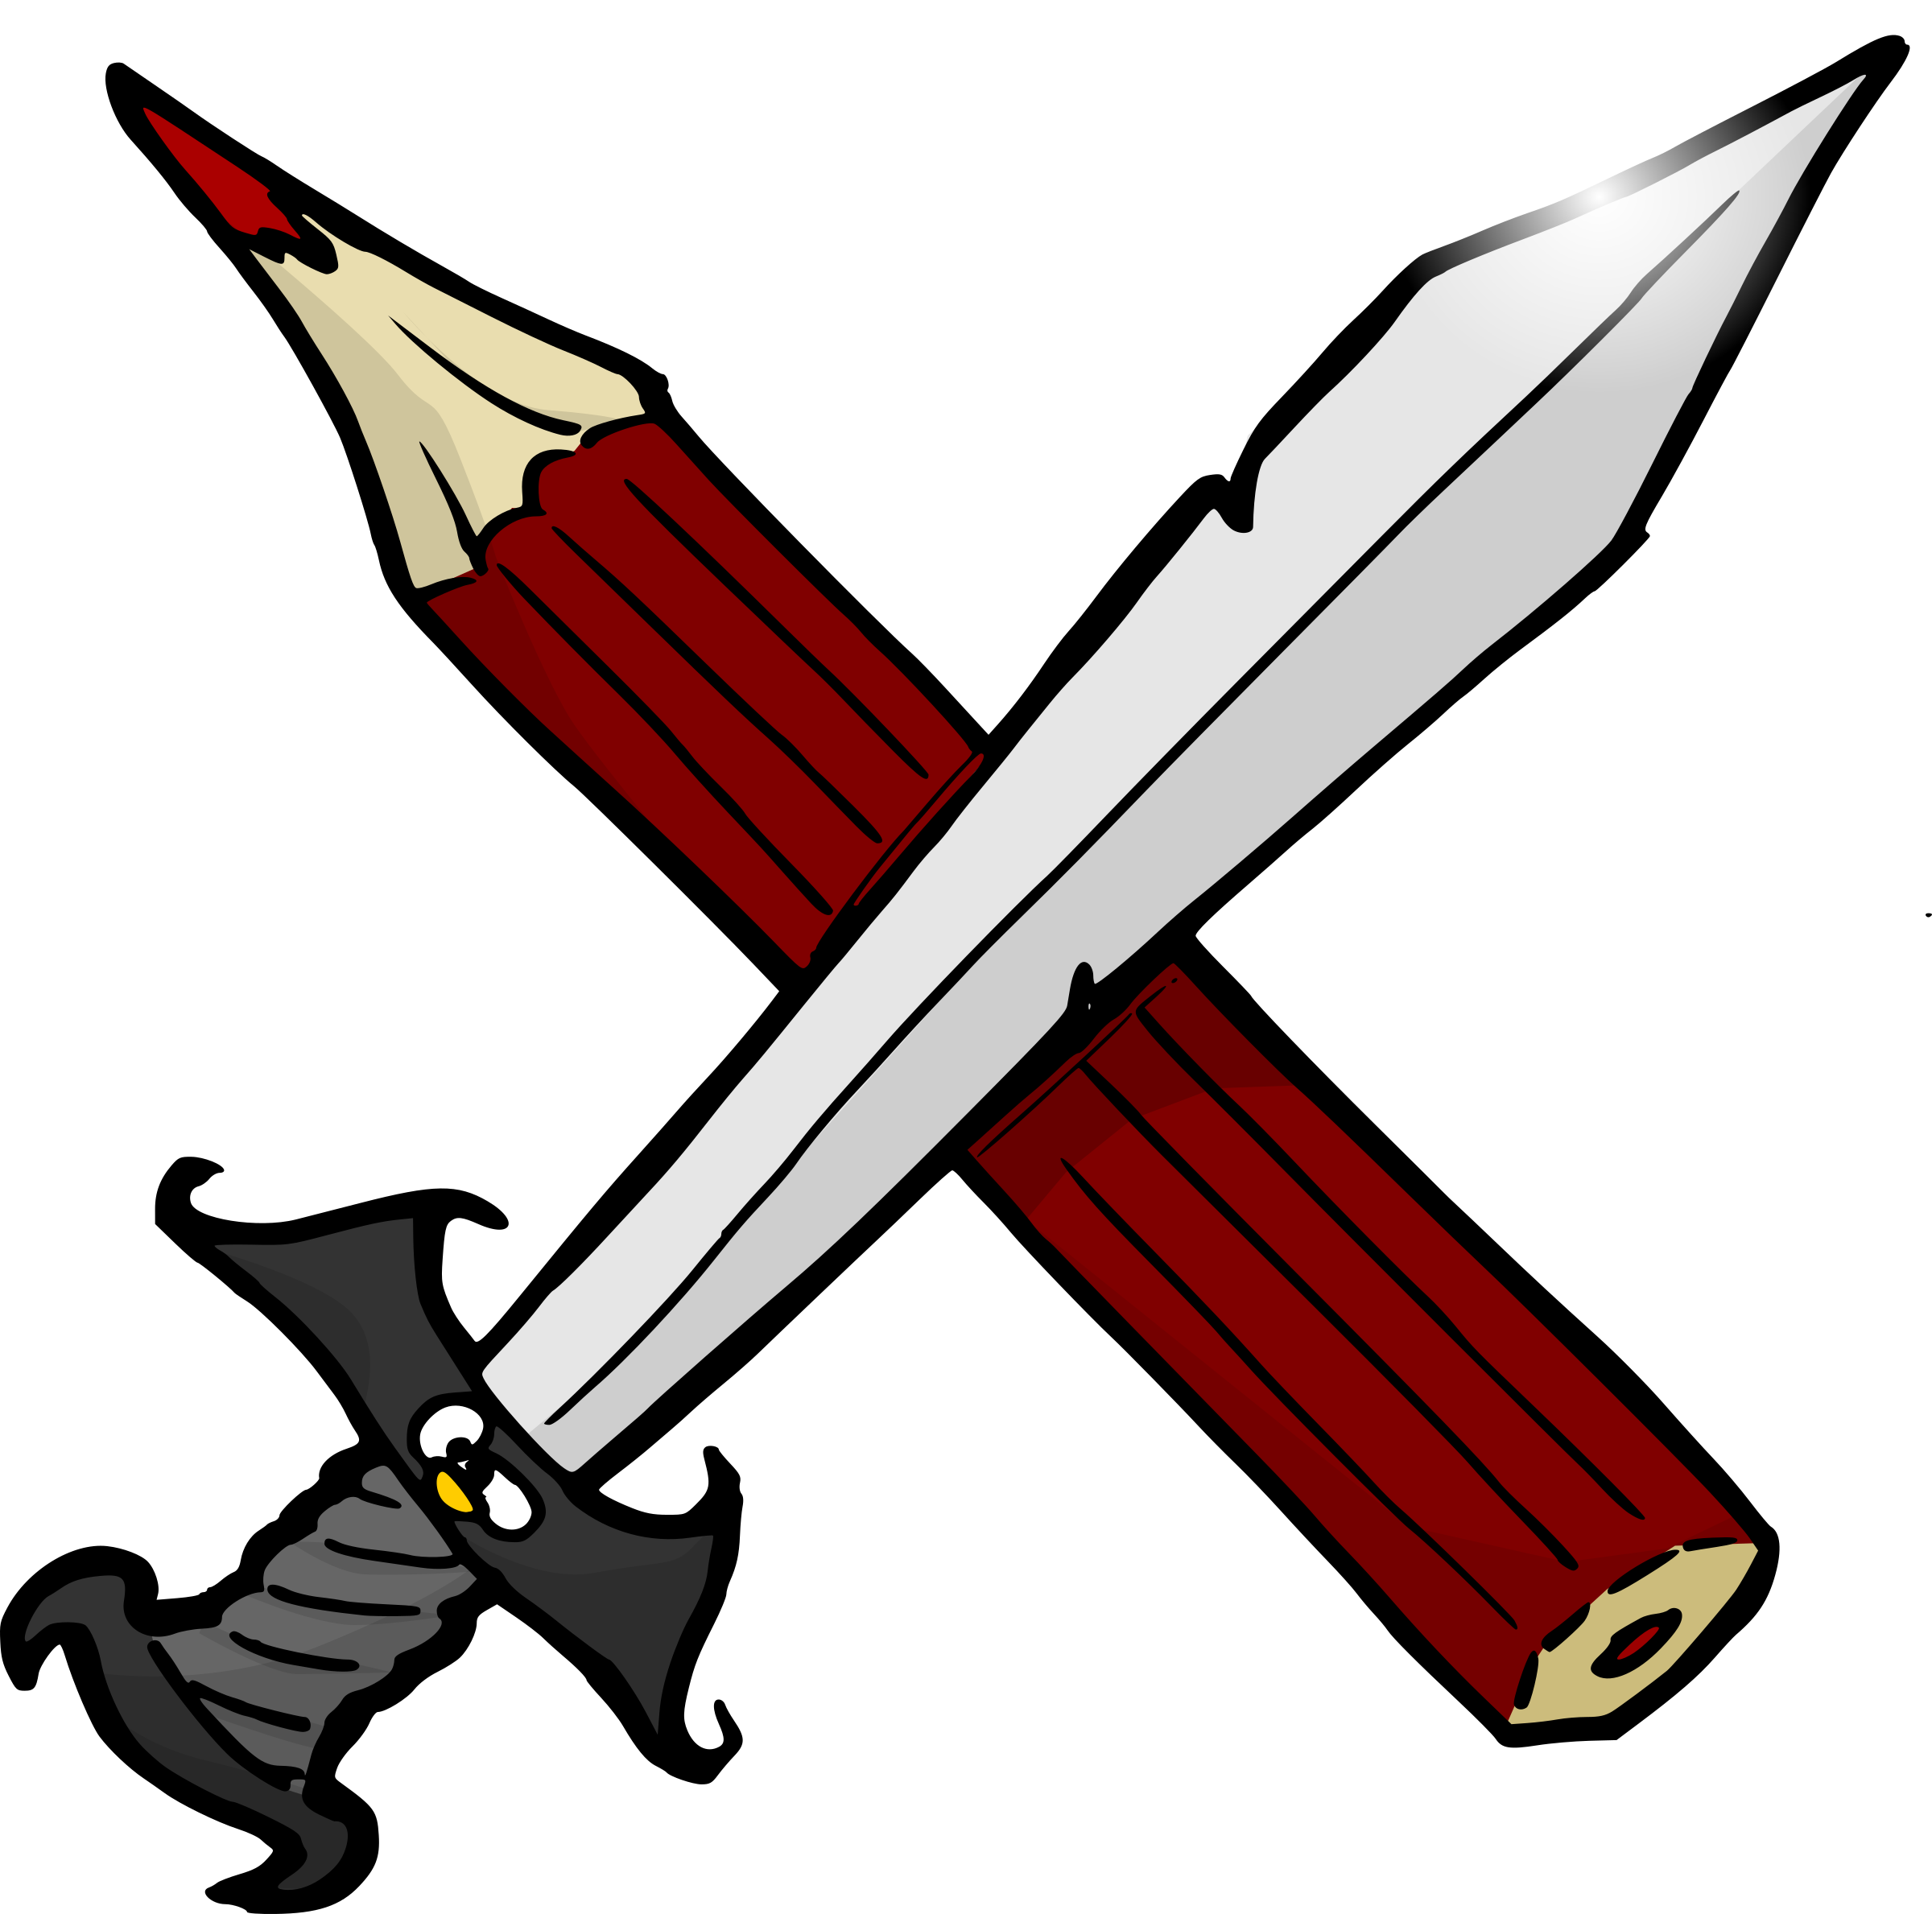 Big Image - Sword And Pencil (2400x2378)